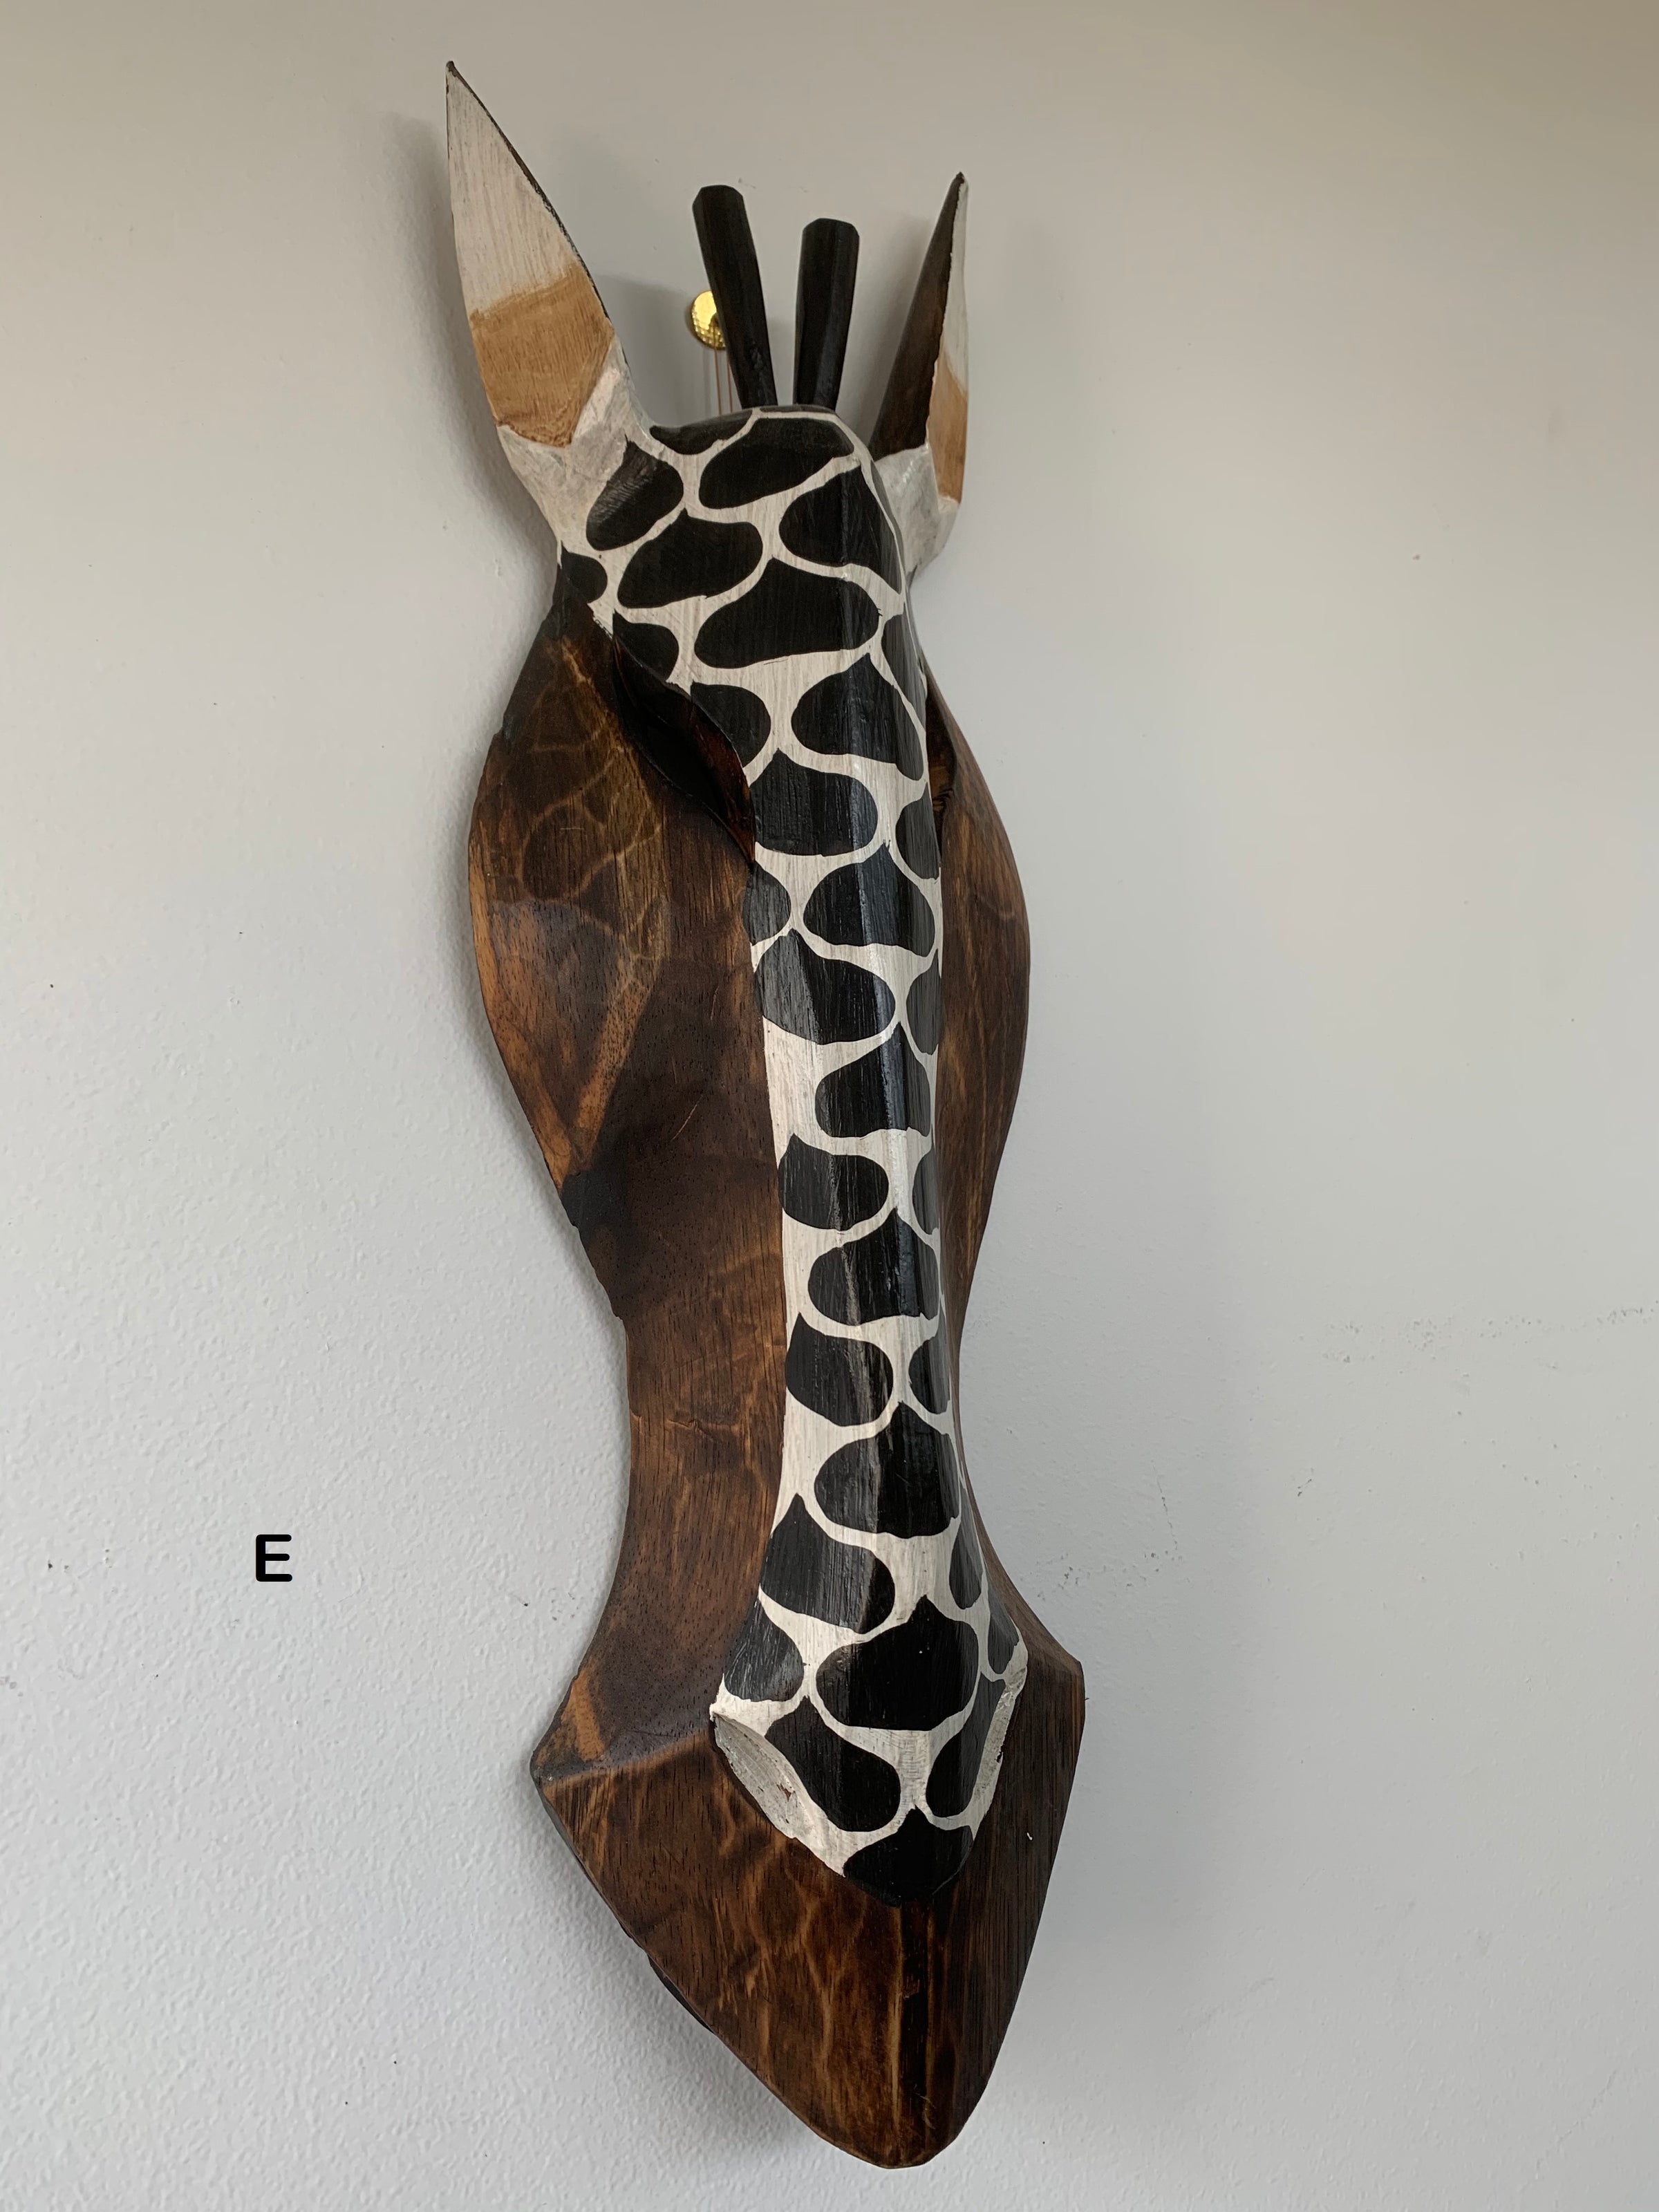 Hand Carved Wooden Antelope Masks